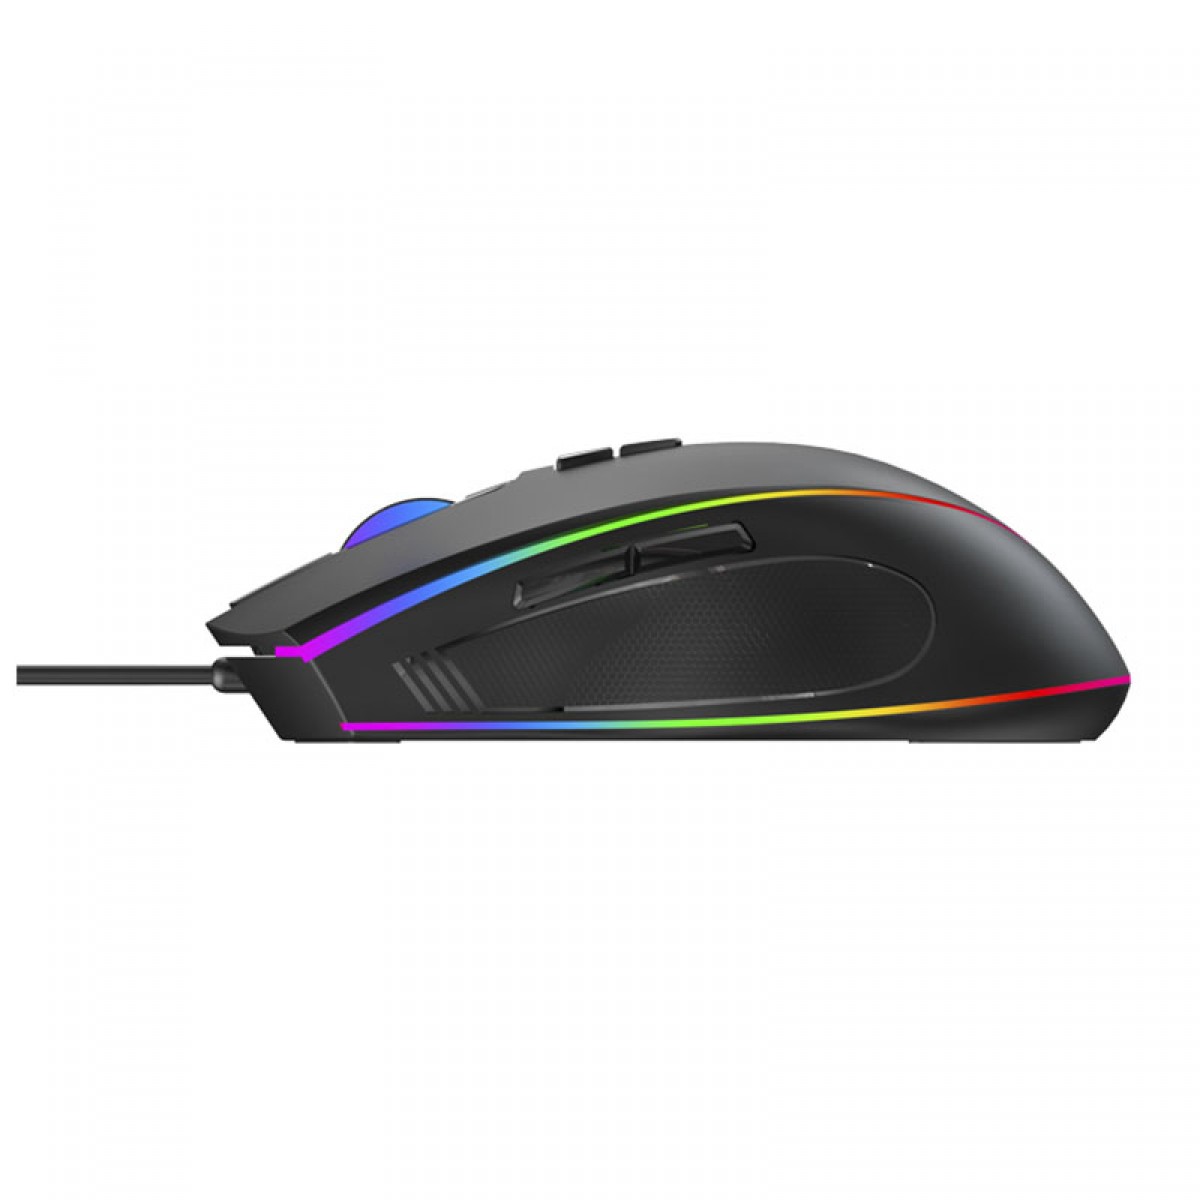 Mouse Gamer Havit MS1017, 6400 DPI, 7 Botões, RGB, Black